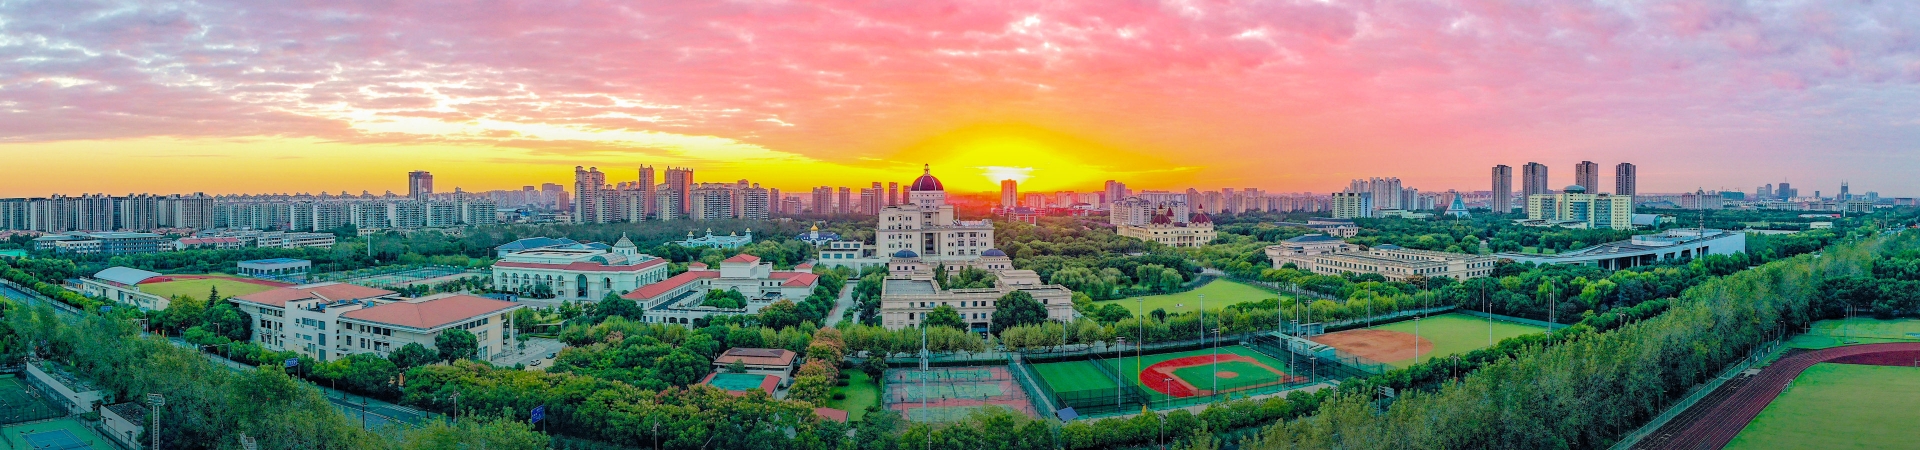 Toàn cảnh Đại học Ngoại ngữ Thượng Hải